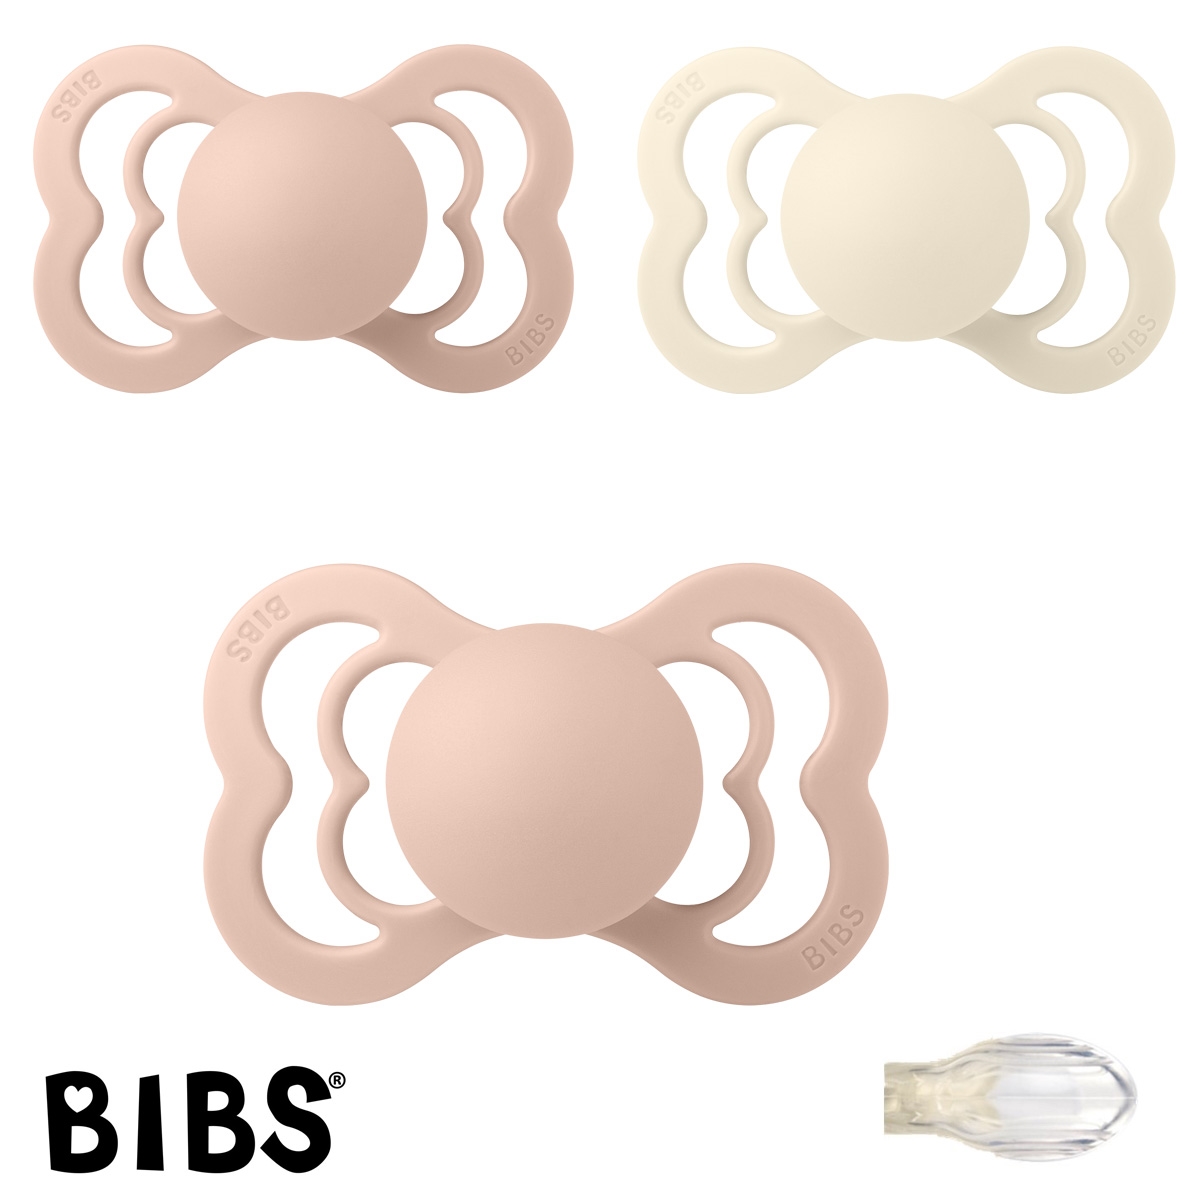 BIBS Supreme Sutter med navn, 1 Ivory, 2 Blush, Symmetrisk Silikone str.2 Pakke med 3 sutter